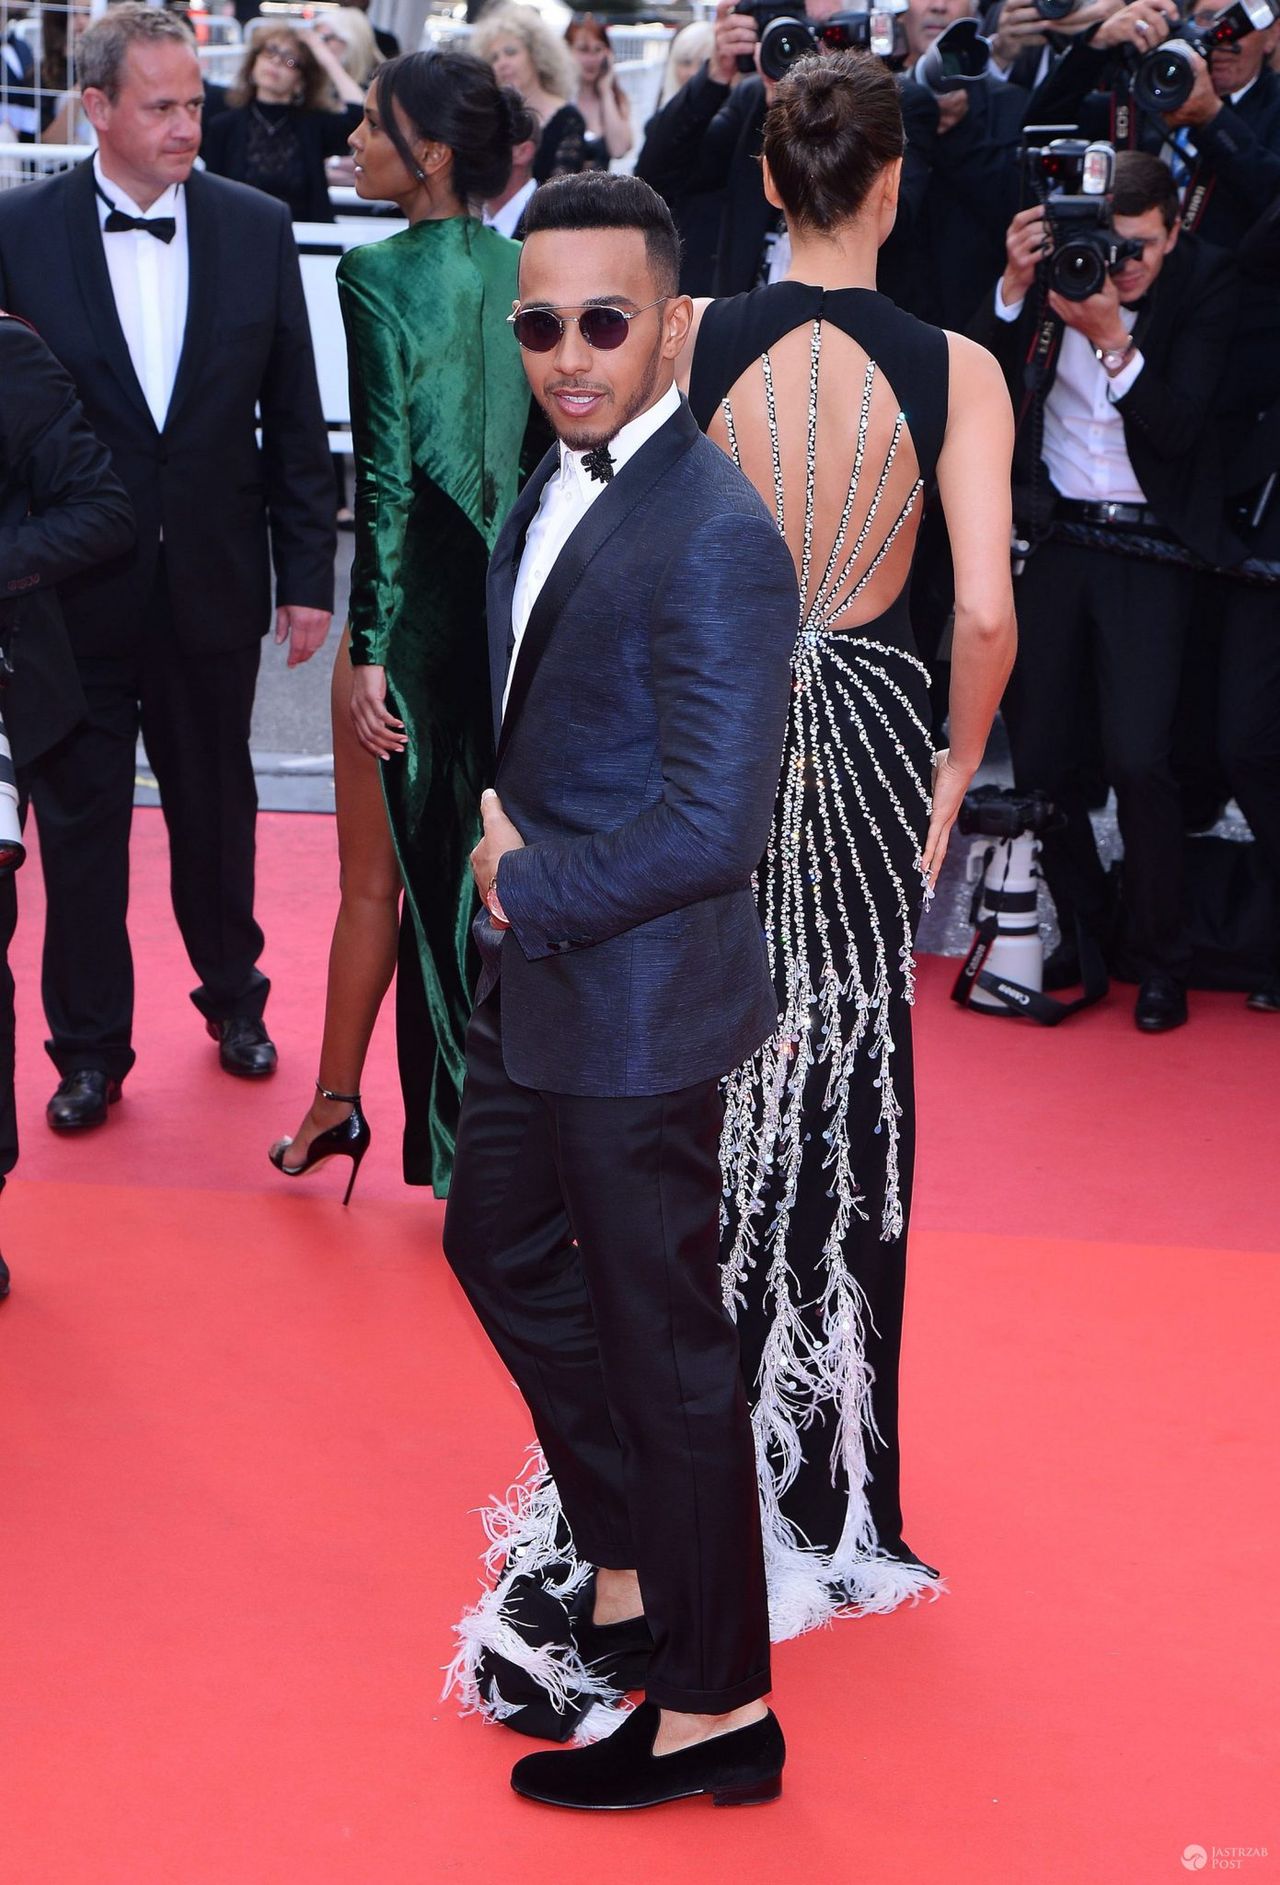 Lewis Hamilton pozuje fotografom na premierze "The Unknown Girl" na festiwalu w Cannes 2016 (fot. ONS)